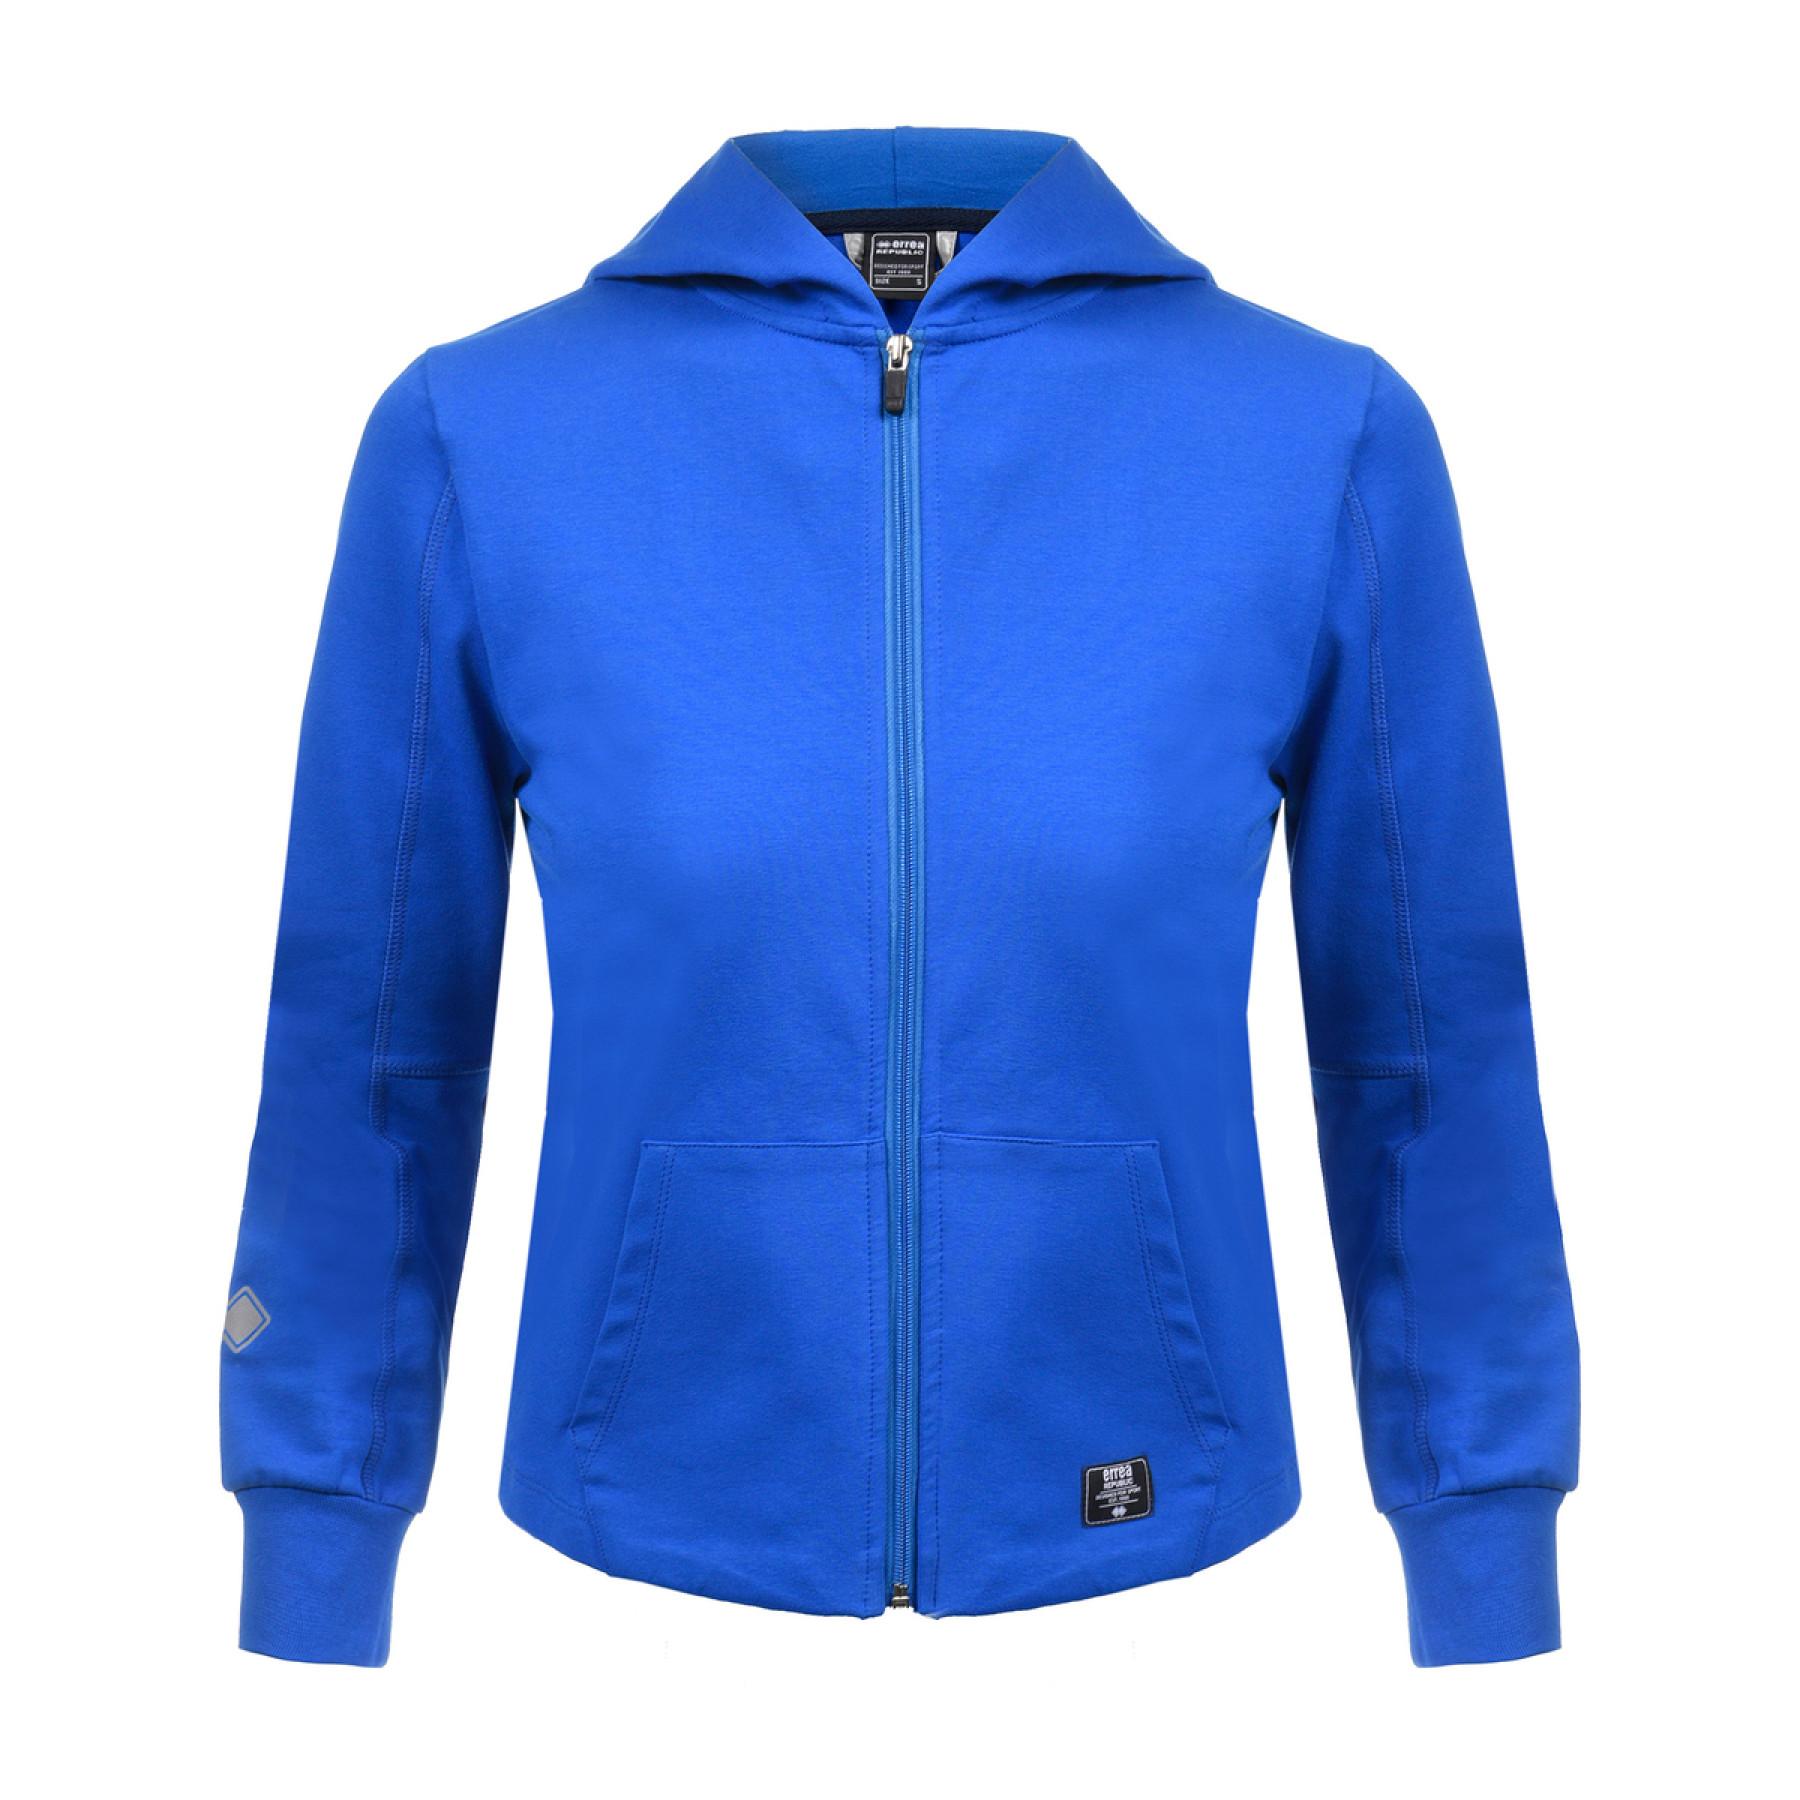 Full zip jacket for women Errea contemporary fleece